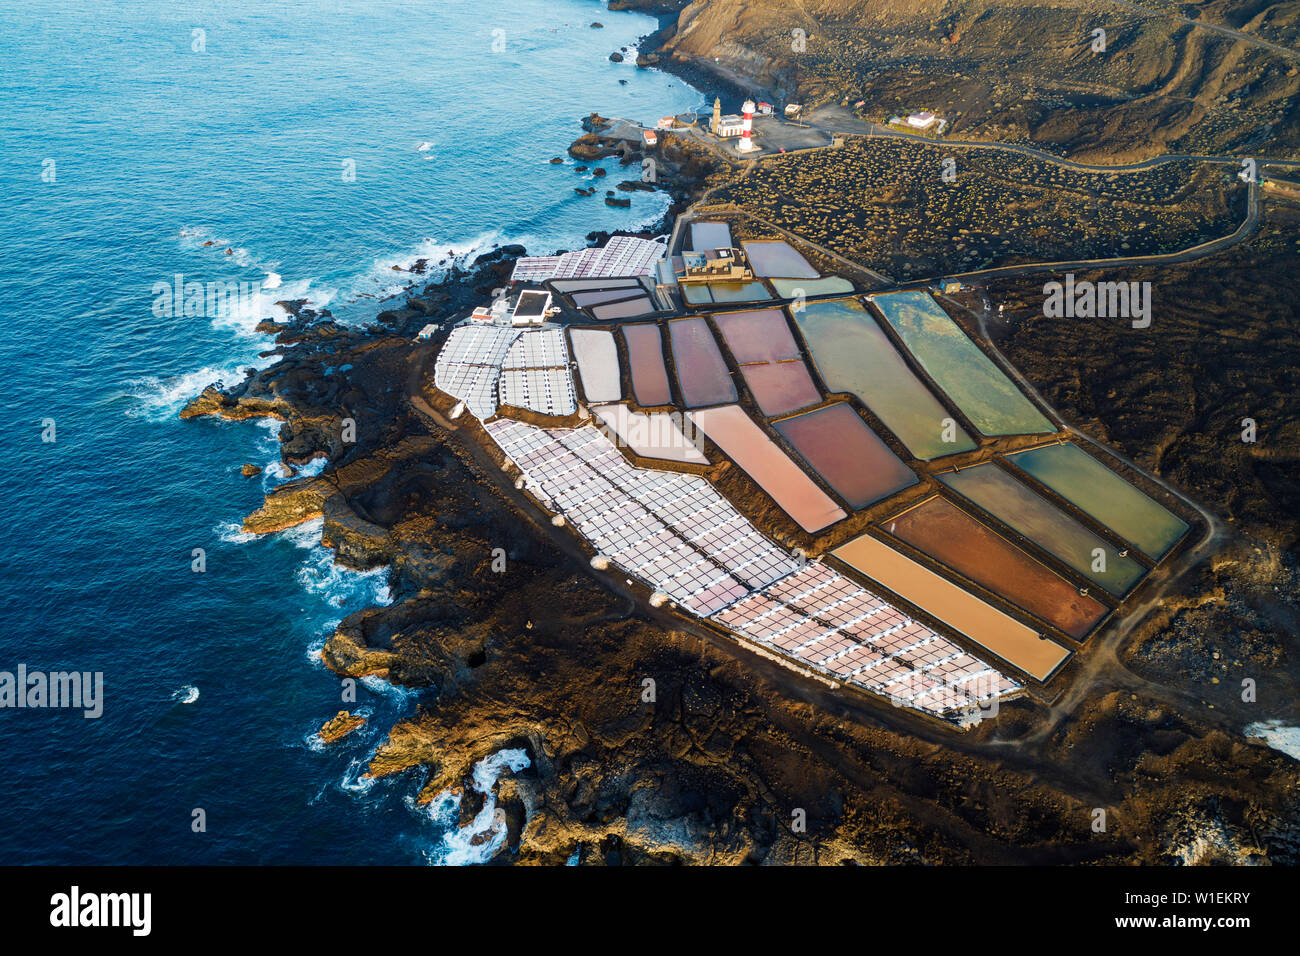 Vue aérienne des salines et phare de Faro de Fuencaliente. Site de la biosphère de l'UNESCO, La Palma, Canary Islands, Spain, Europe, Atlantique Banque D'Images